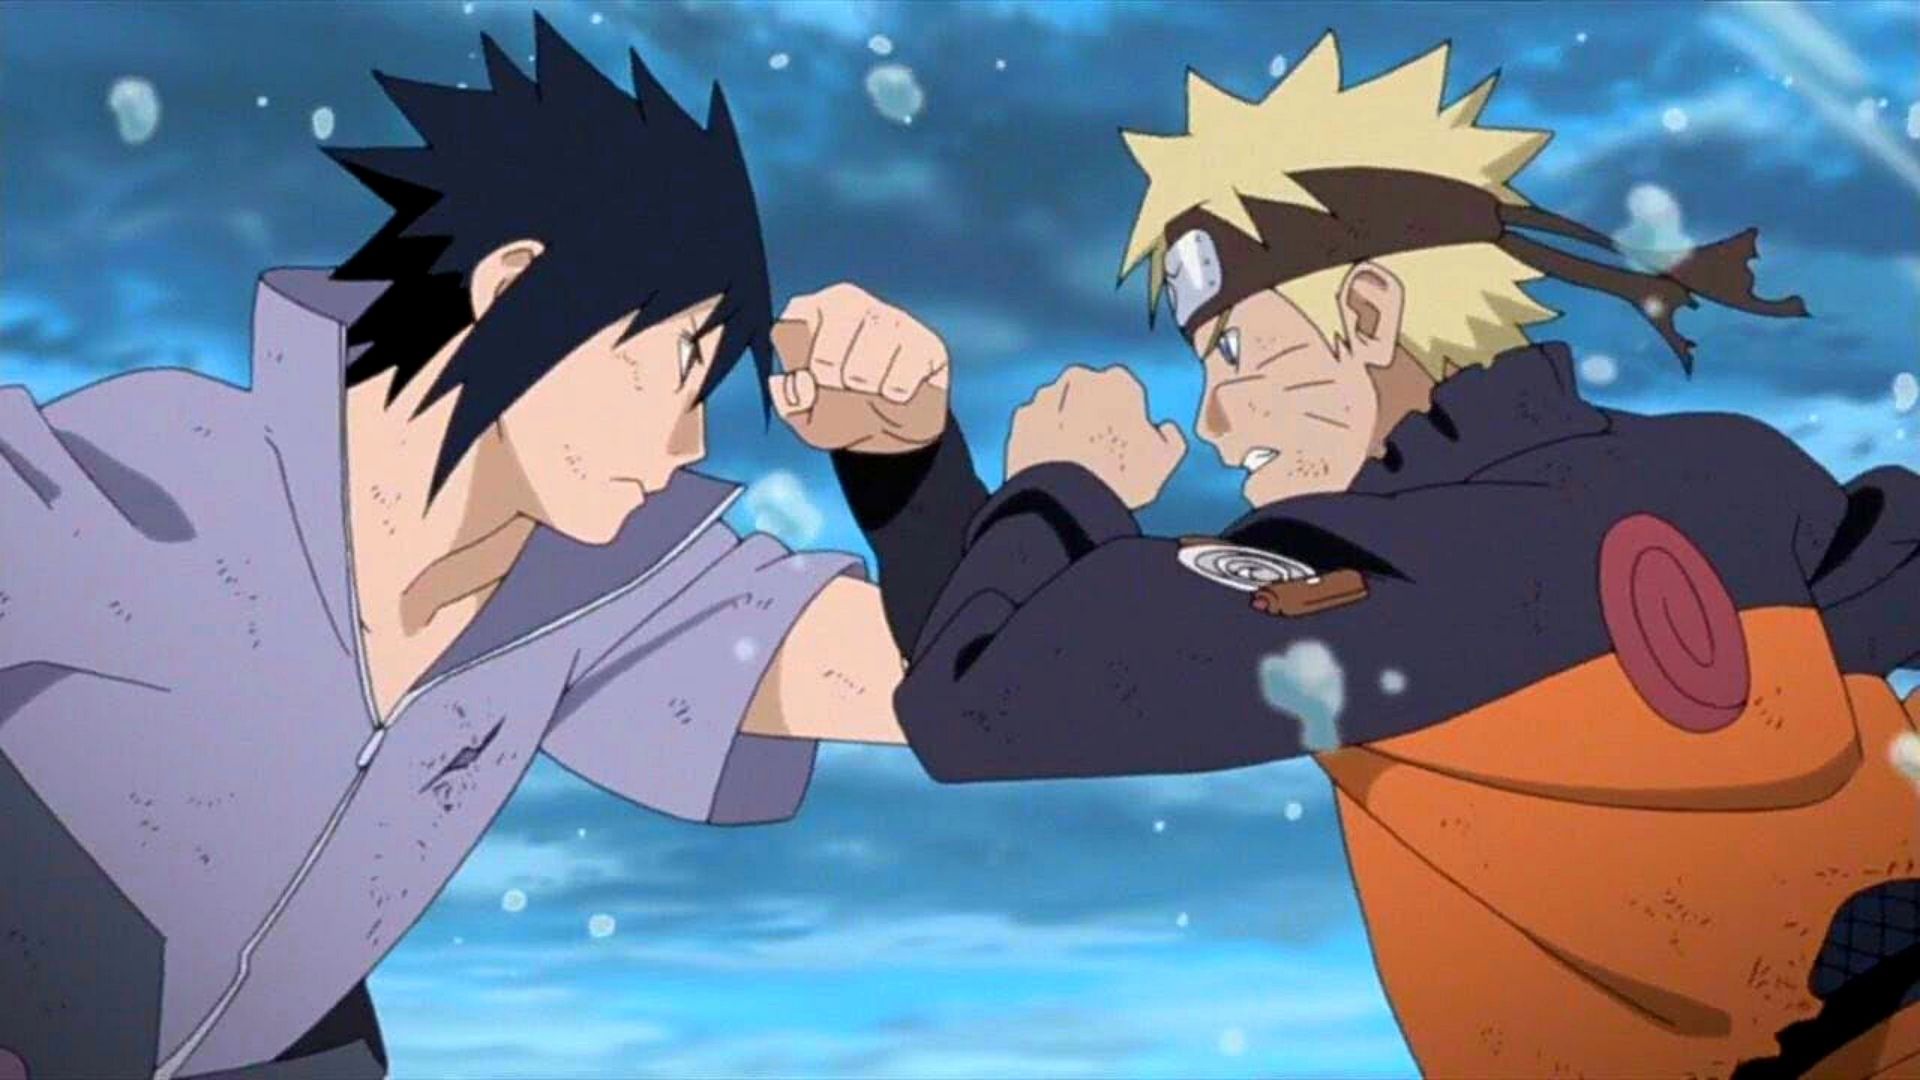 Naruto vs sasuke final fight